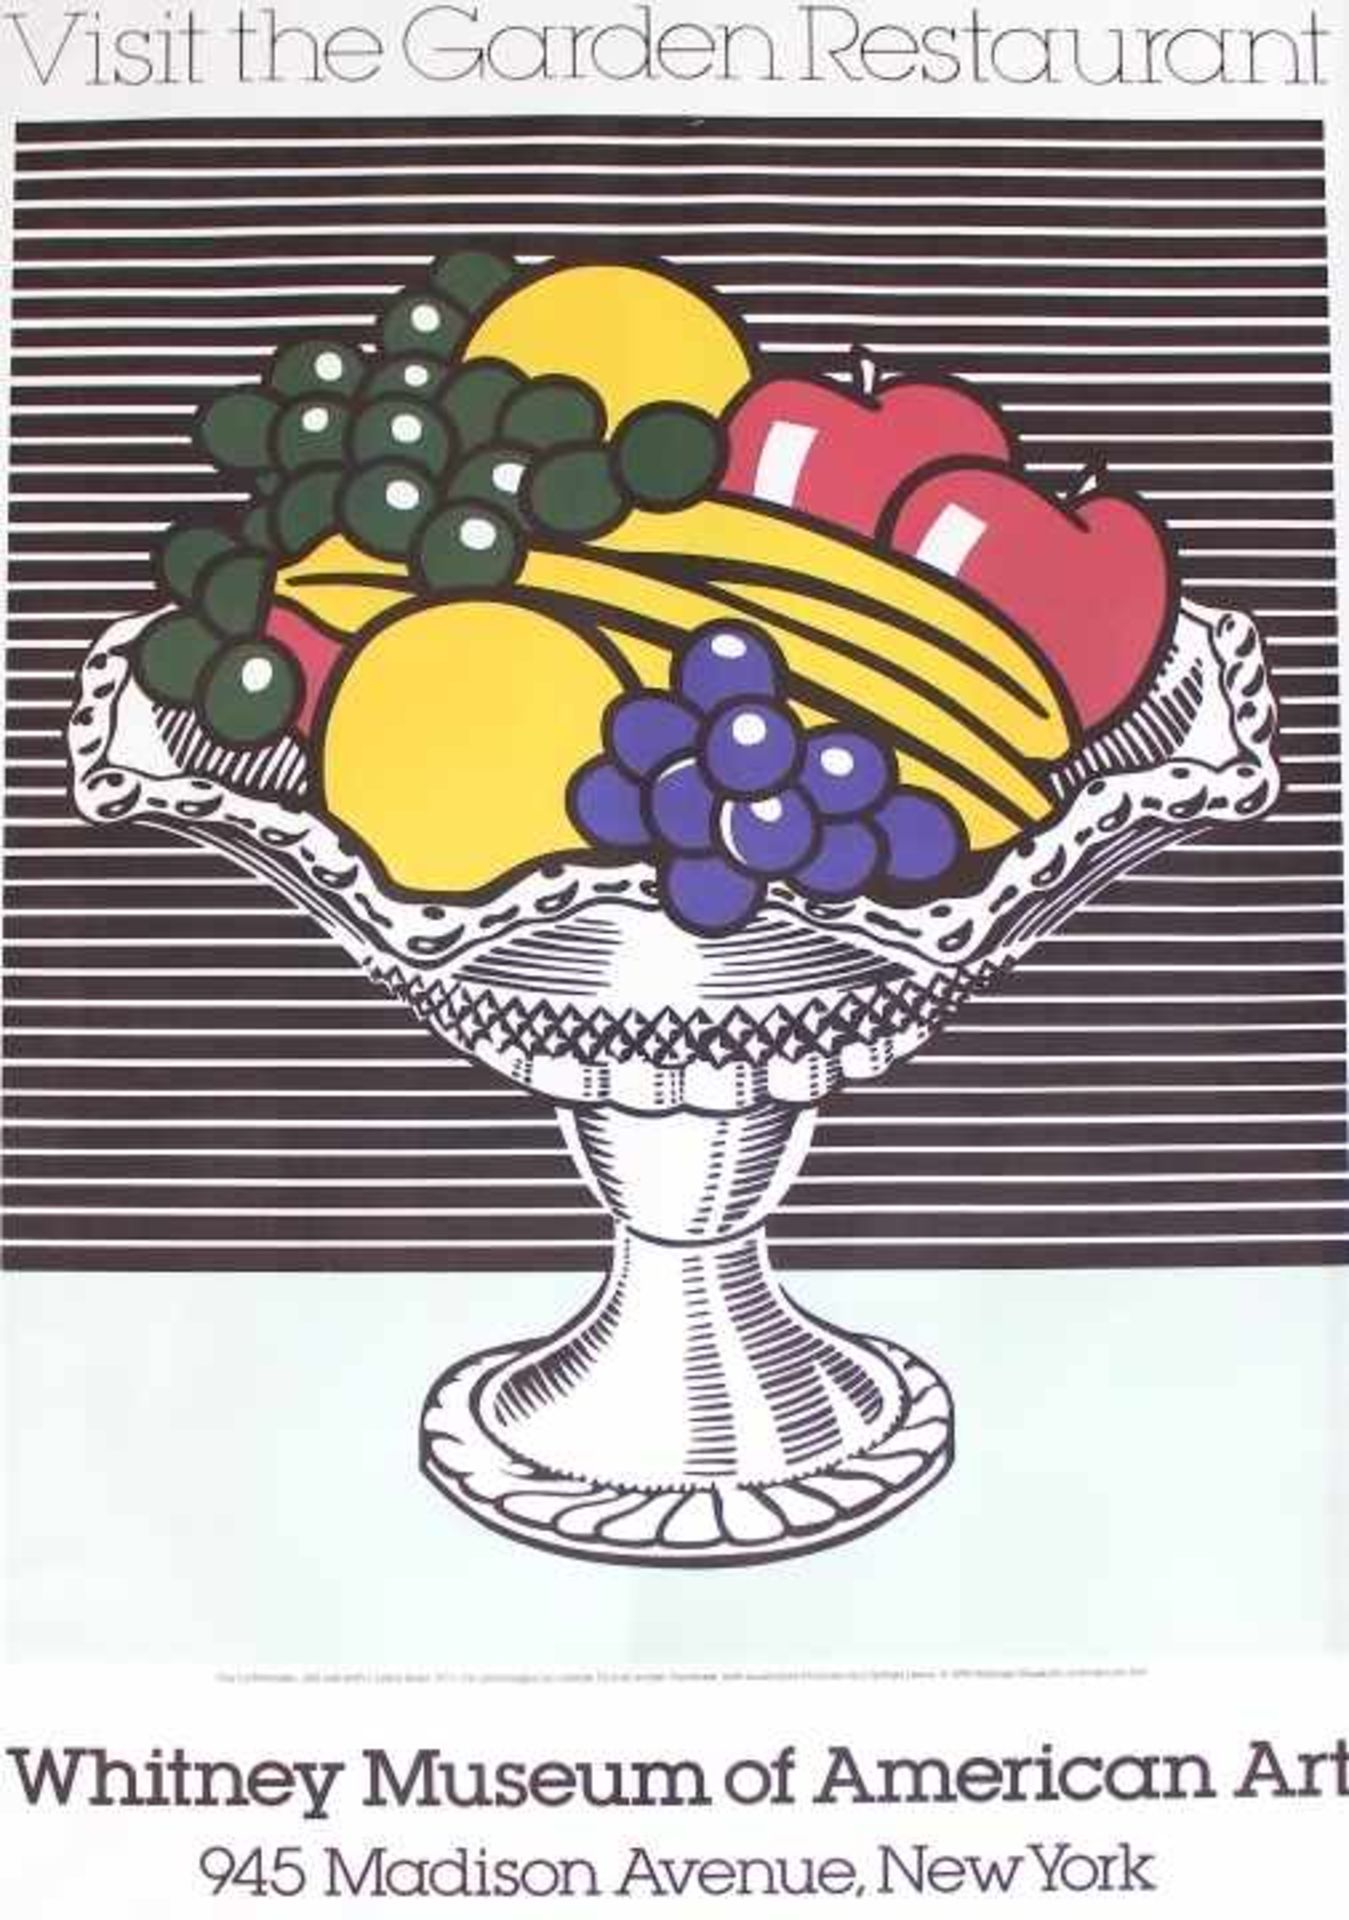 Plakat - nach Roy Lichtenstein (1923-1997) "Stillleben mt Kristallschale", typographisch bez: "Visit